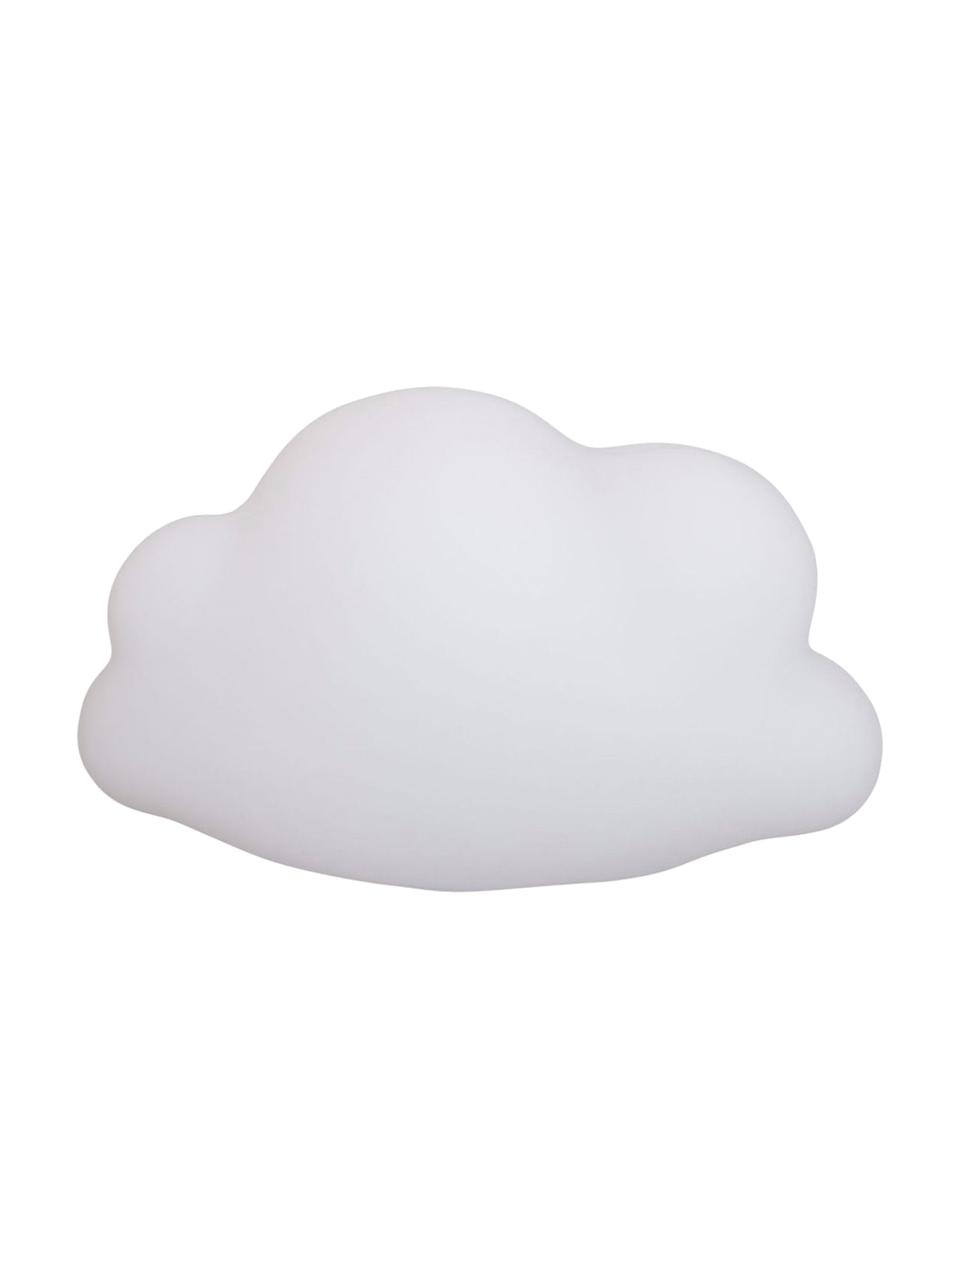 LED-Leuchtobjekt Cloud, Kunststoff, Weiß, Rosa, Schwarz, 45 x 25 cm